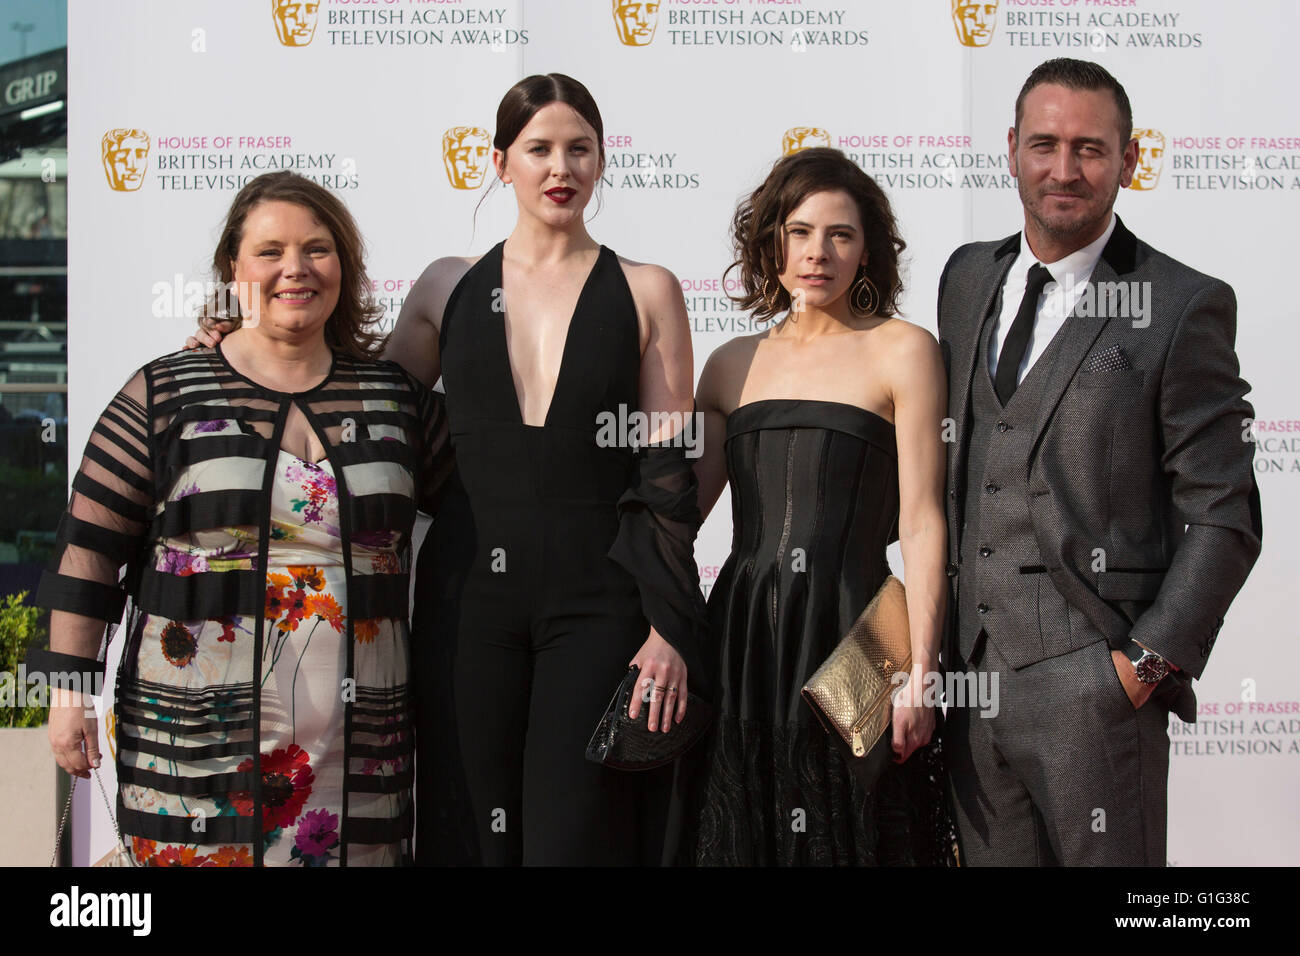 Londra, Regno Unito. 8 maggio 2016. Tappeto rosso arrivi della celebrità per la House of Fraser British Academy Awards televisivo presso la Royal Festival Hall. Foto Stock